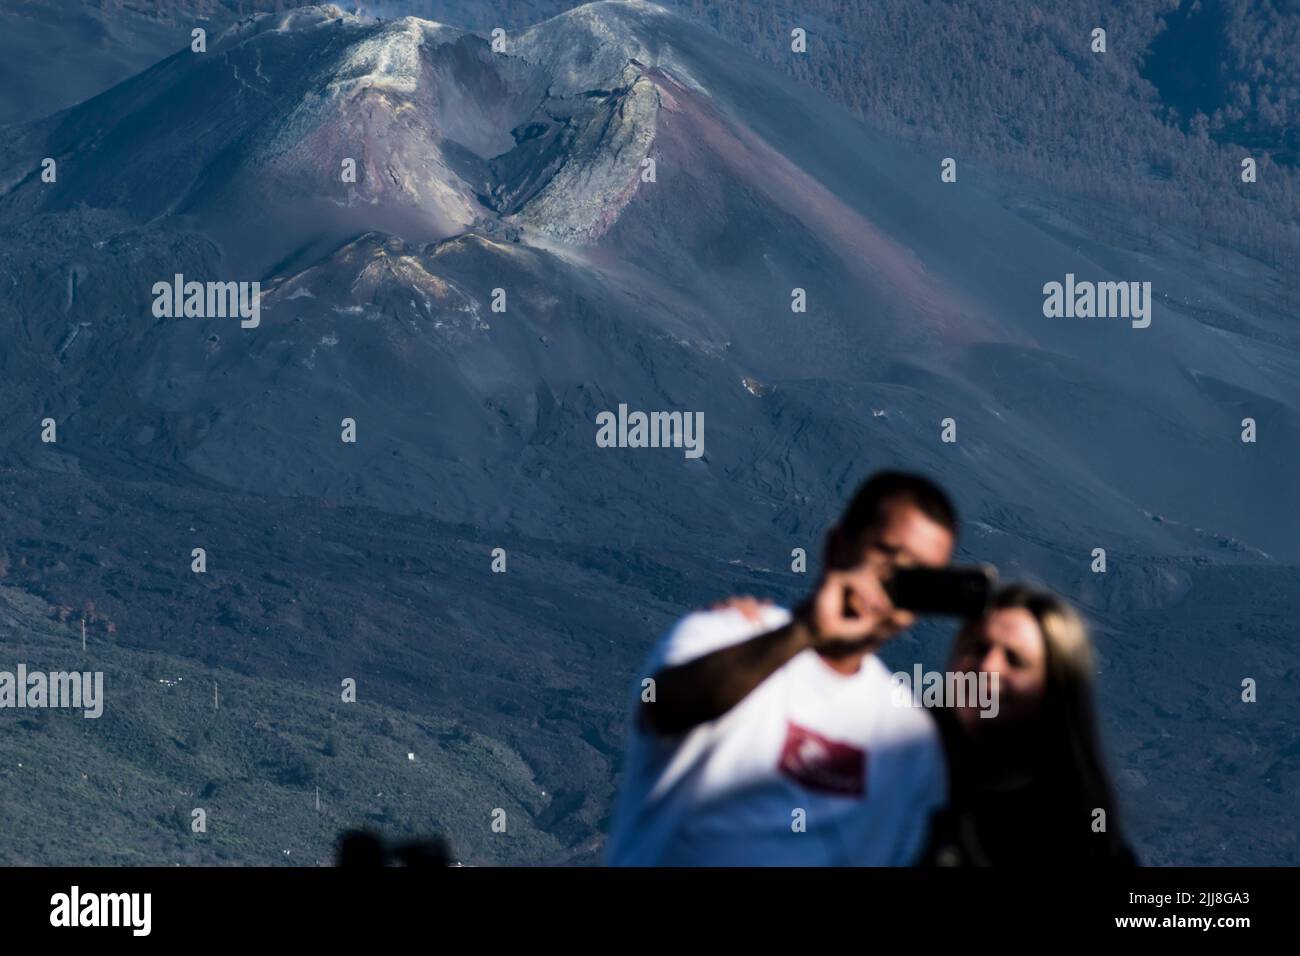 Un couple est photographié avec le cône du volcan Takogaite en arrière-plan. La Palma, Îles Canaries, Espagne Banque D'Images